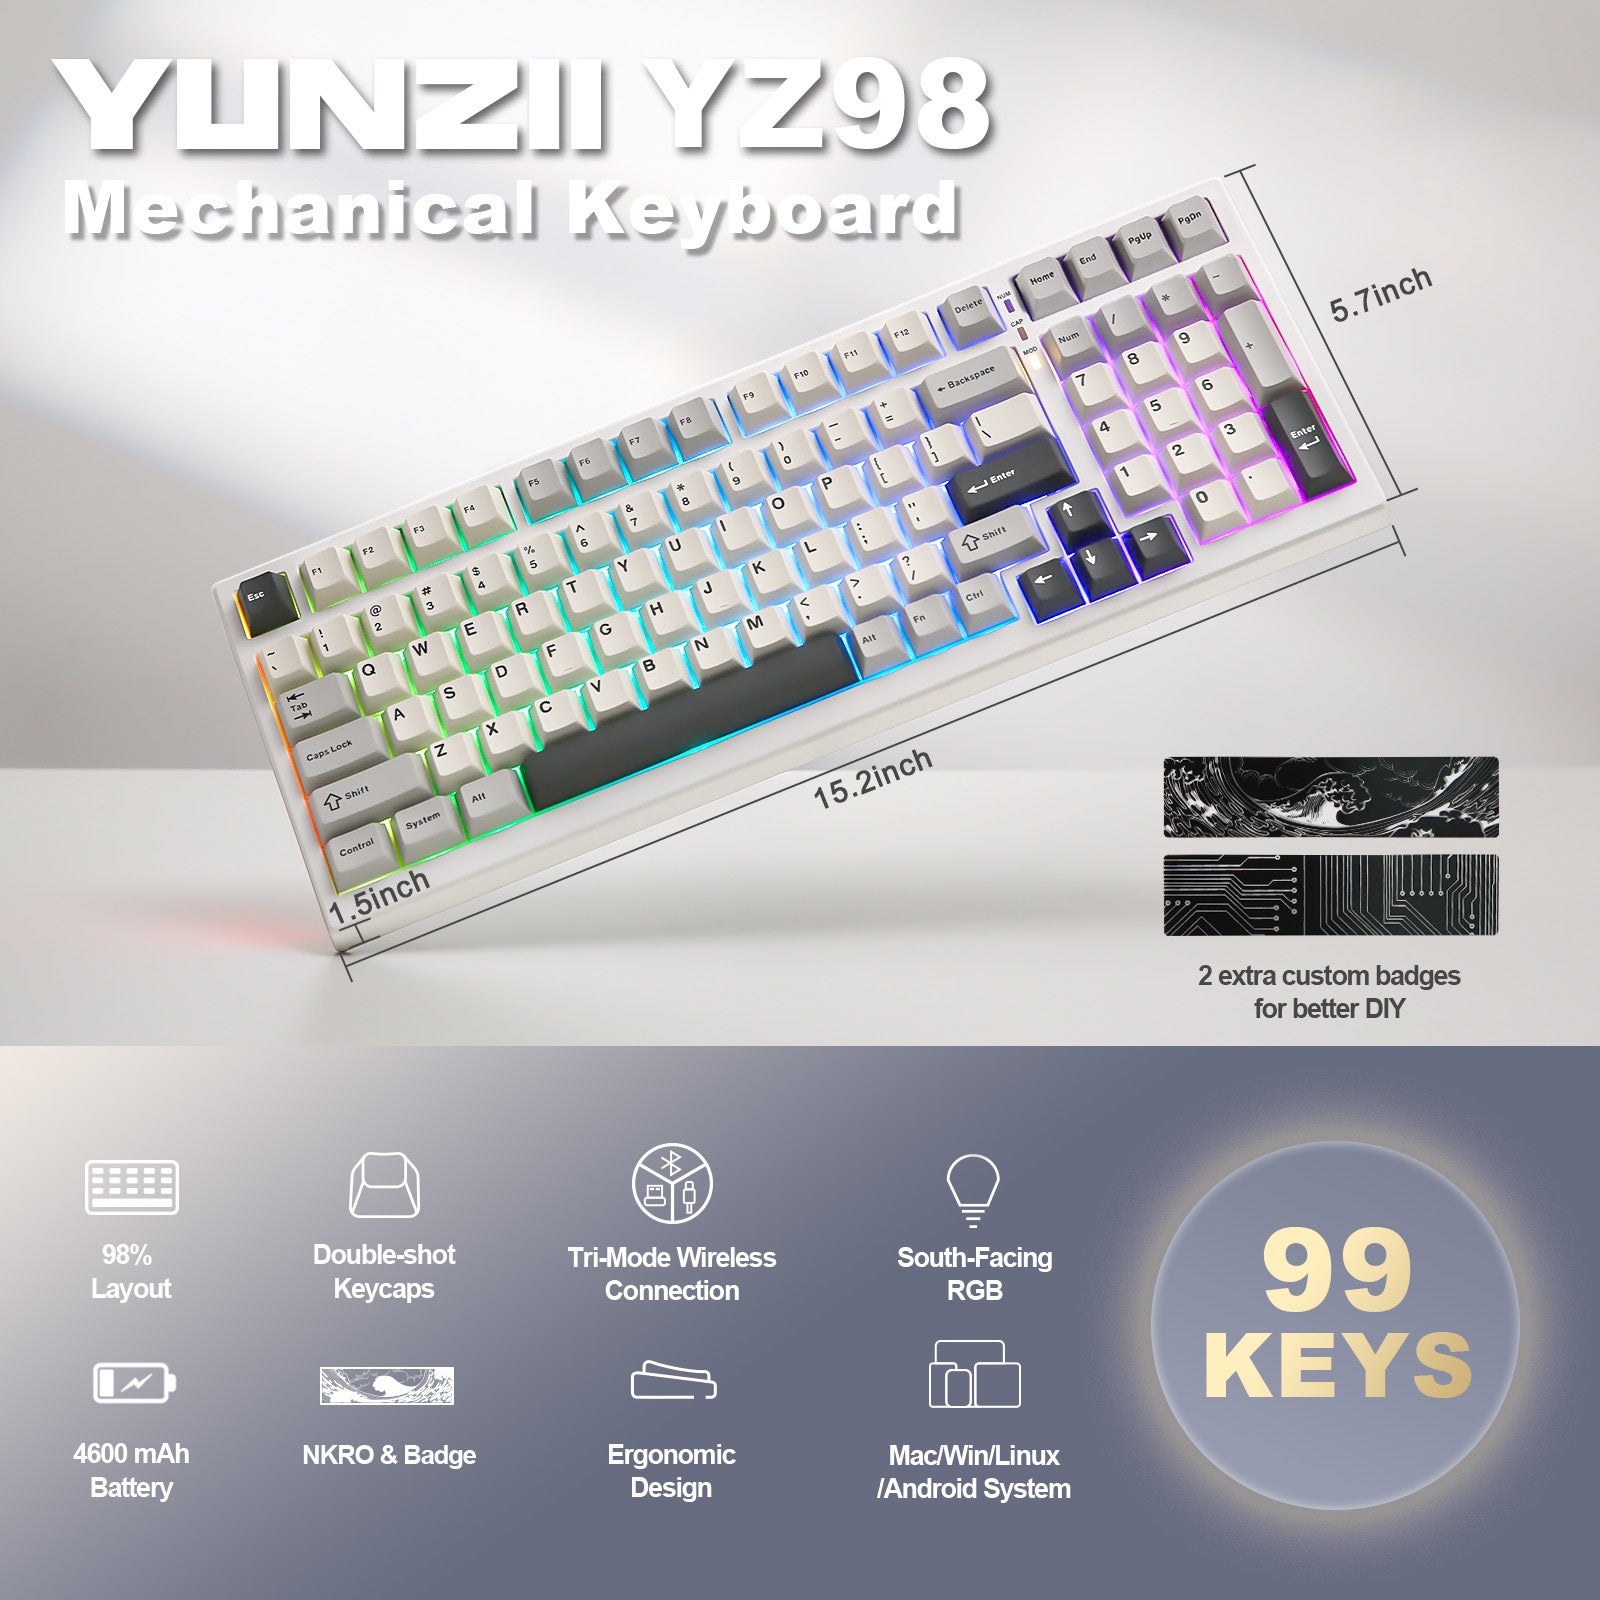 YUNZII YZ98 Mechanical Gaming Keyboard – YUNZII KEYBOARD